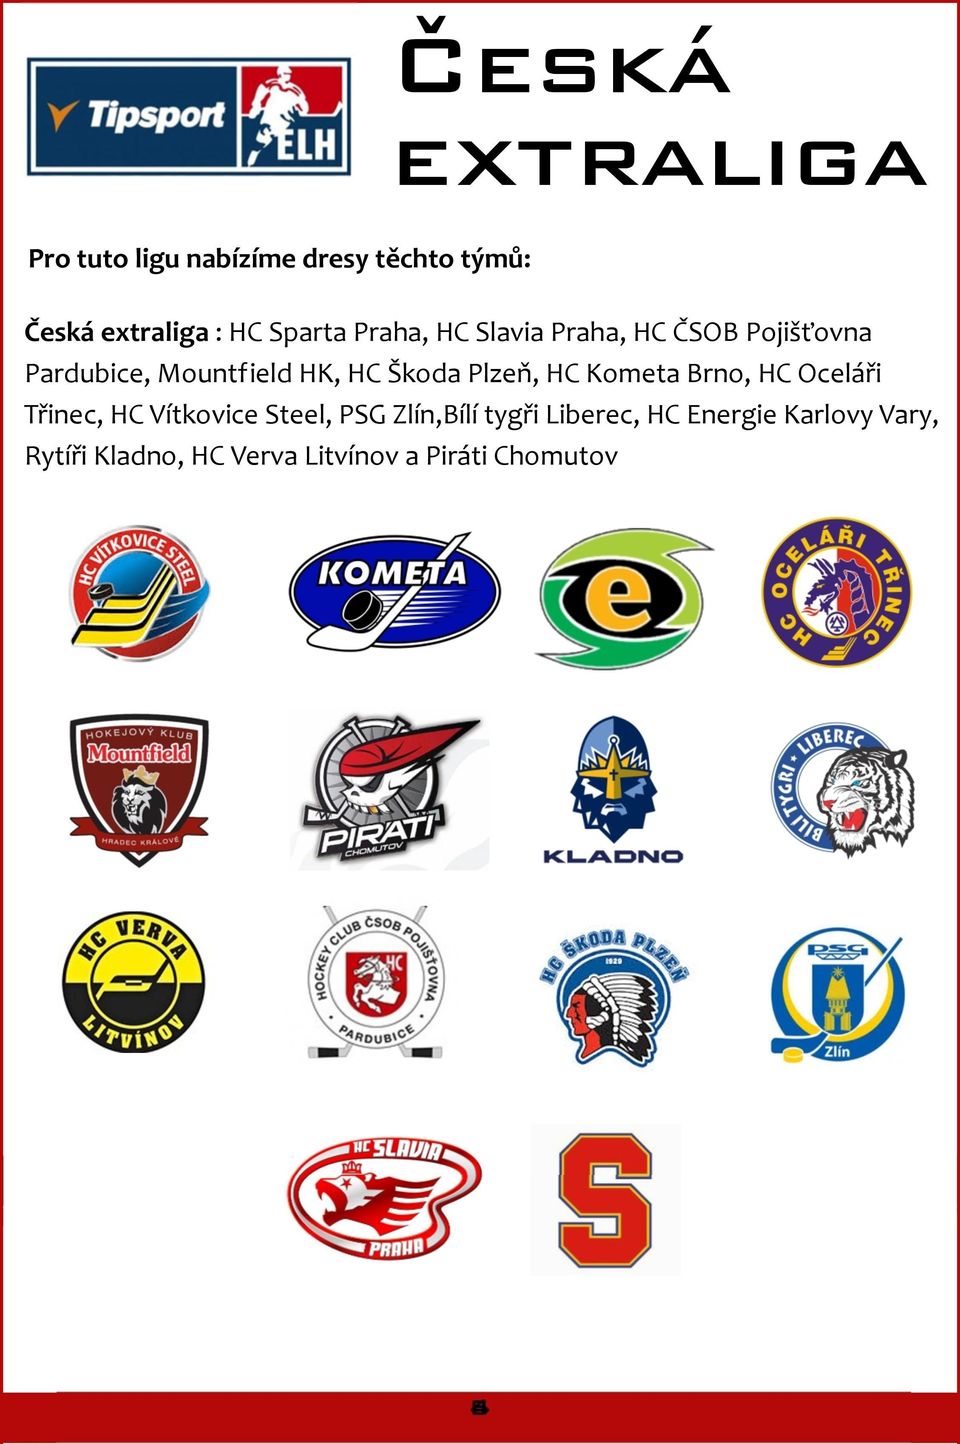 Škoda Plzeň, HC Kometa Brno, HC Oceláři Třinec, HC Vítkovice Steel, PSG Zlín,Bílí